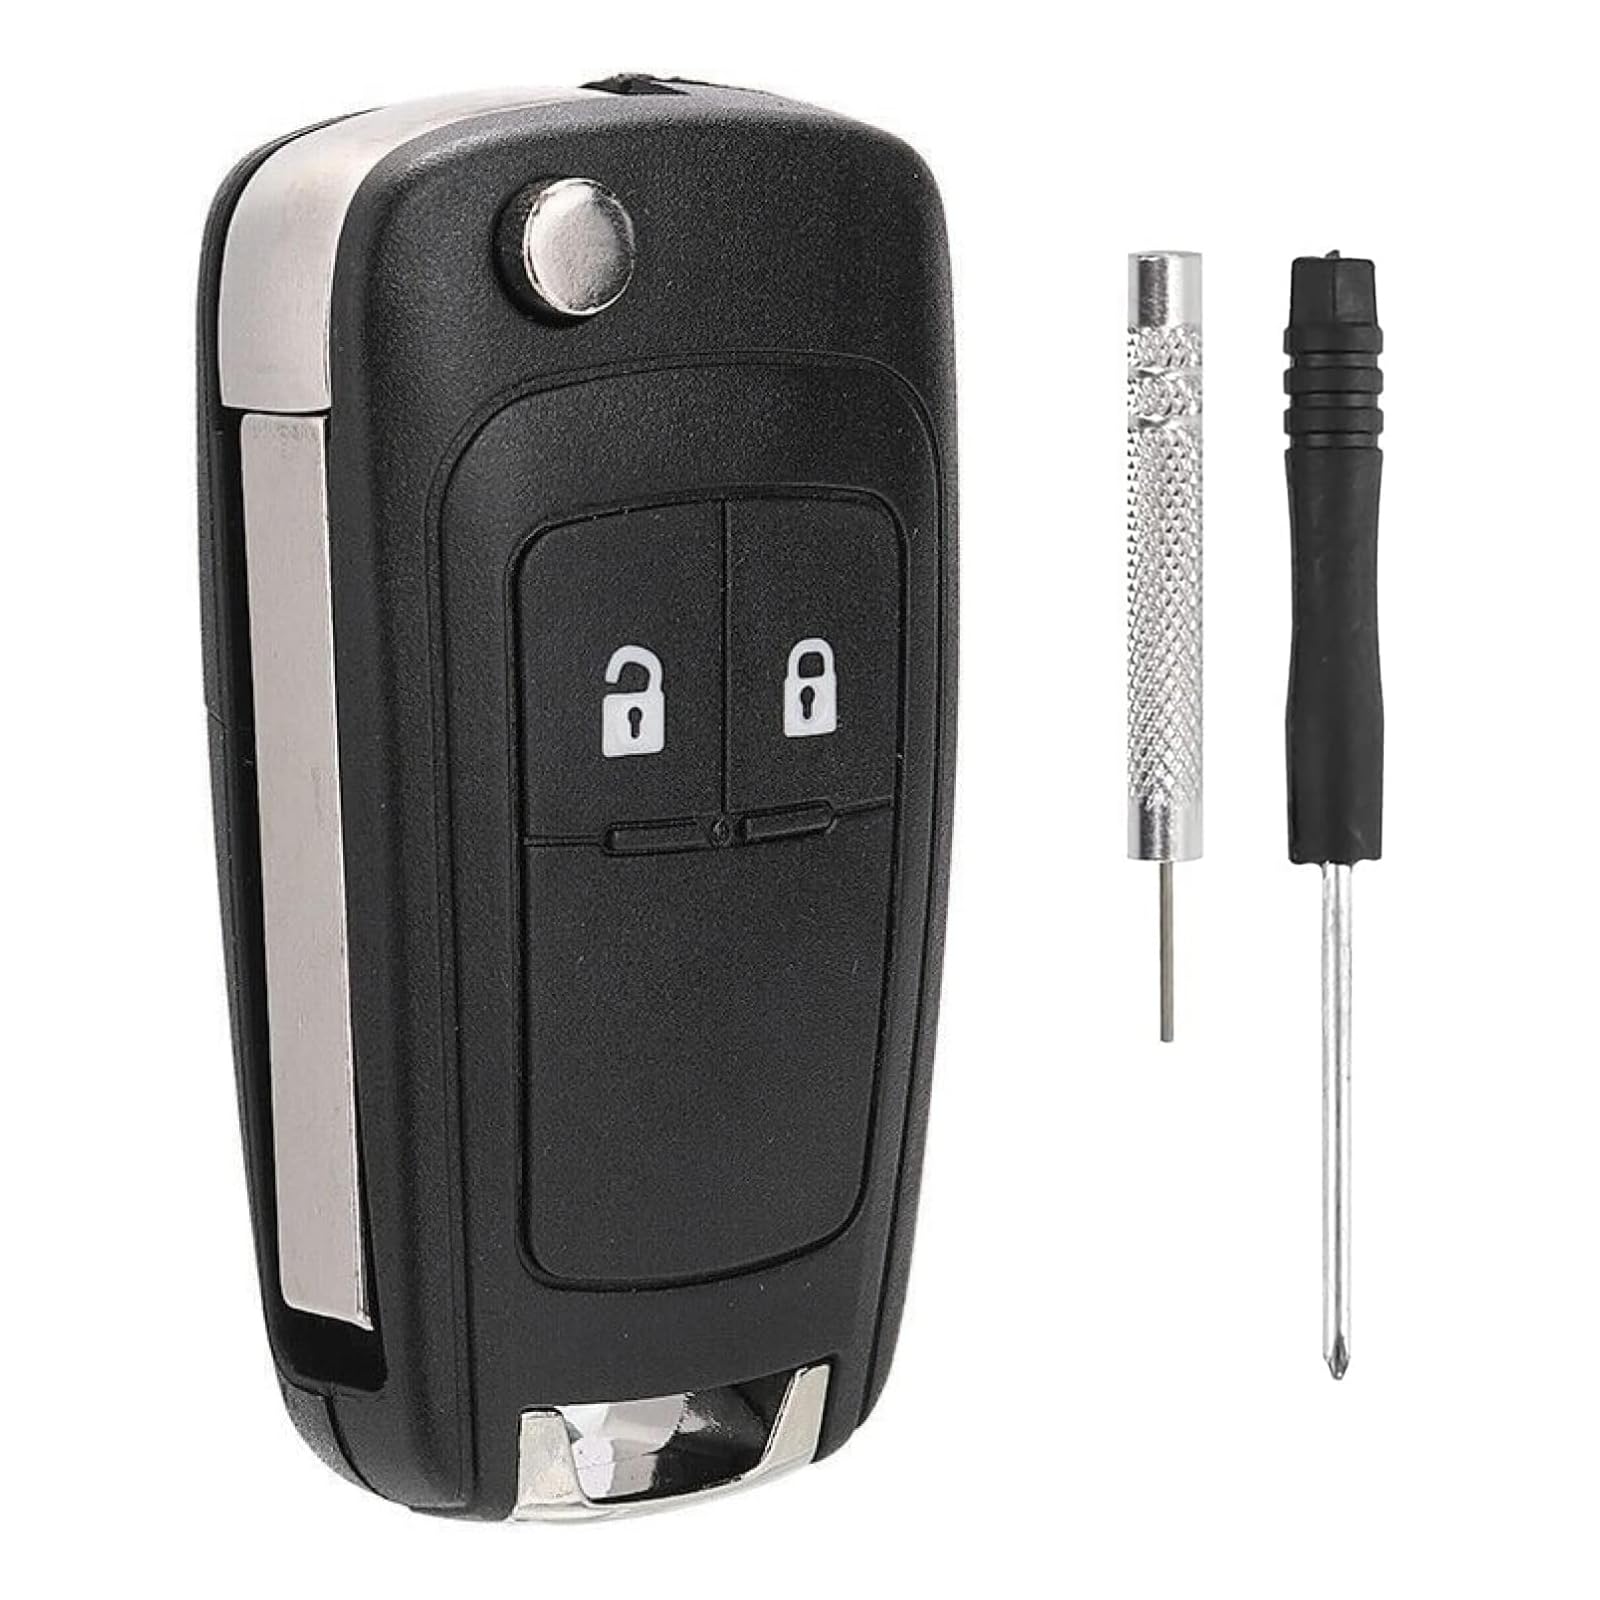 2-Tasten-Auto-Schlüsselgehäuse für die Fernbedienung. Kompatibel mit Chevrolet Aveo, Matiz, Cruze, Captiva, Spark, Orlando, Trax und Opel Vauxhall Astra, Insignia, Vectra. (1er Pack) von Alppihym